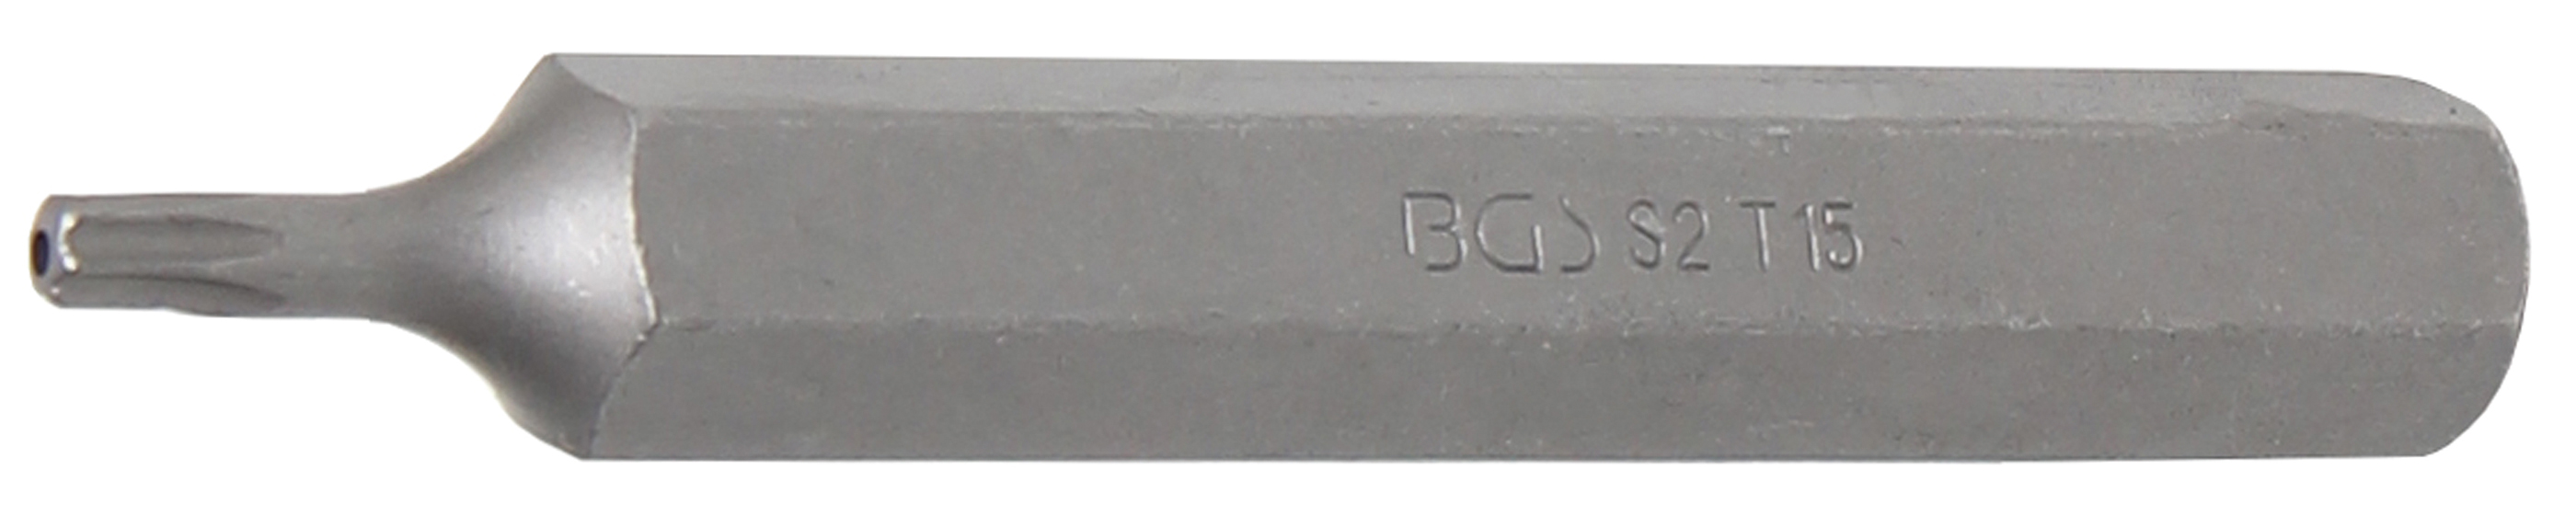 BGS 4715 Bit Torx T15 cu gaura de securizare, lungime 75mm, antrenare 10mm(3/8")